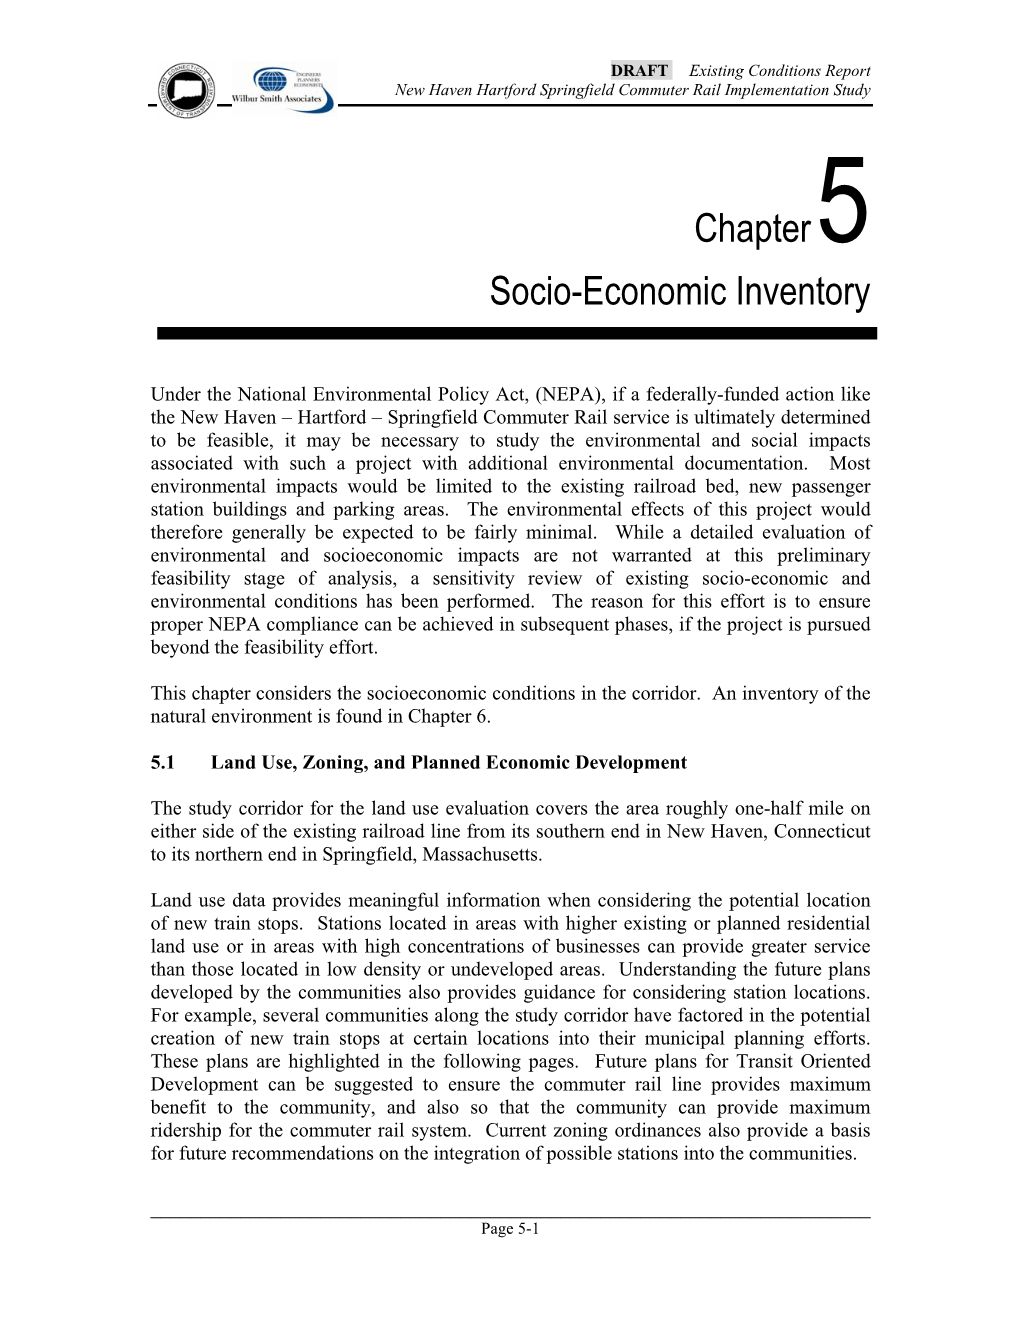 Chapter5 Socio-Economic Inventory